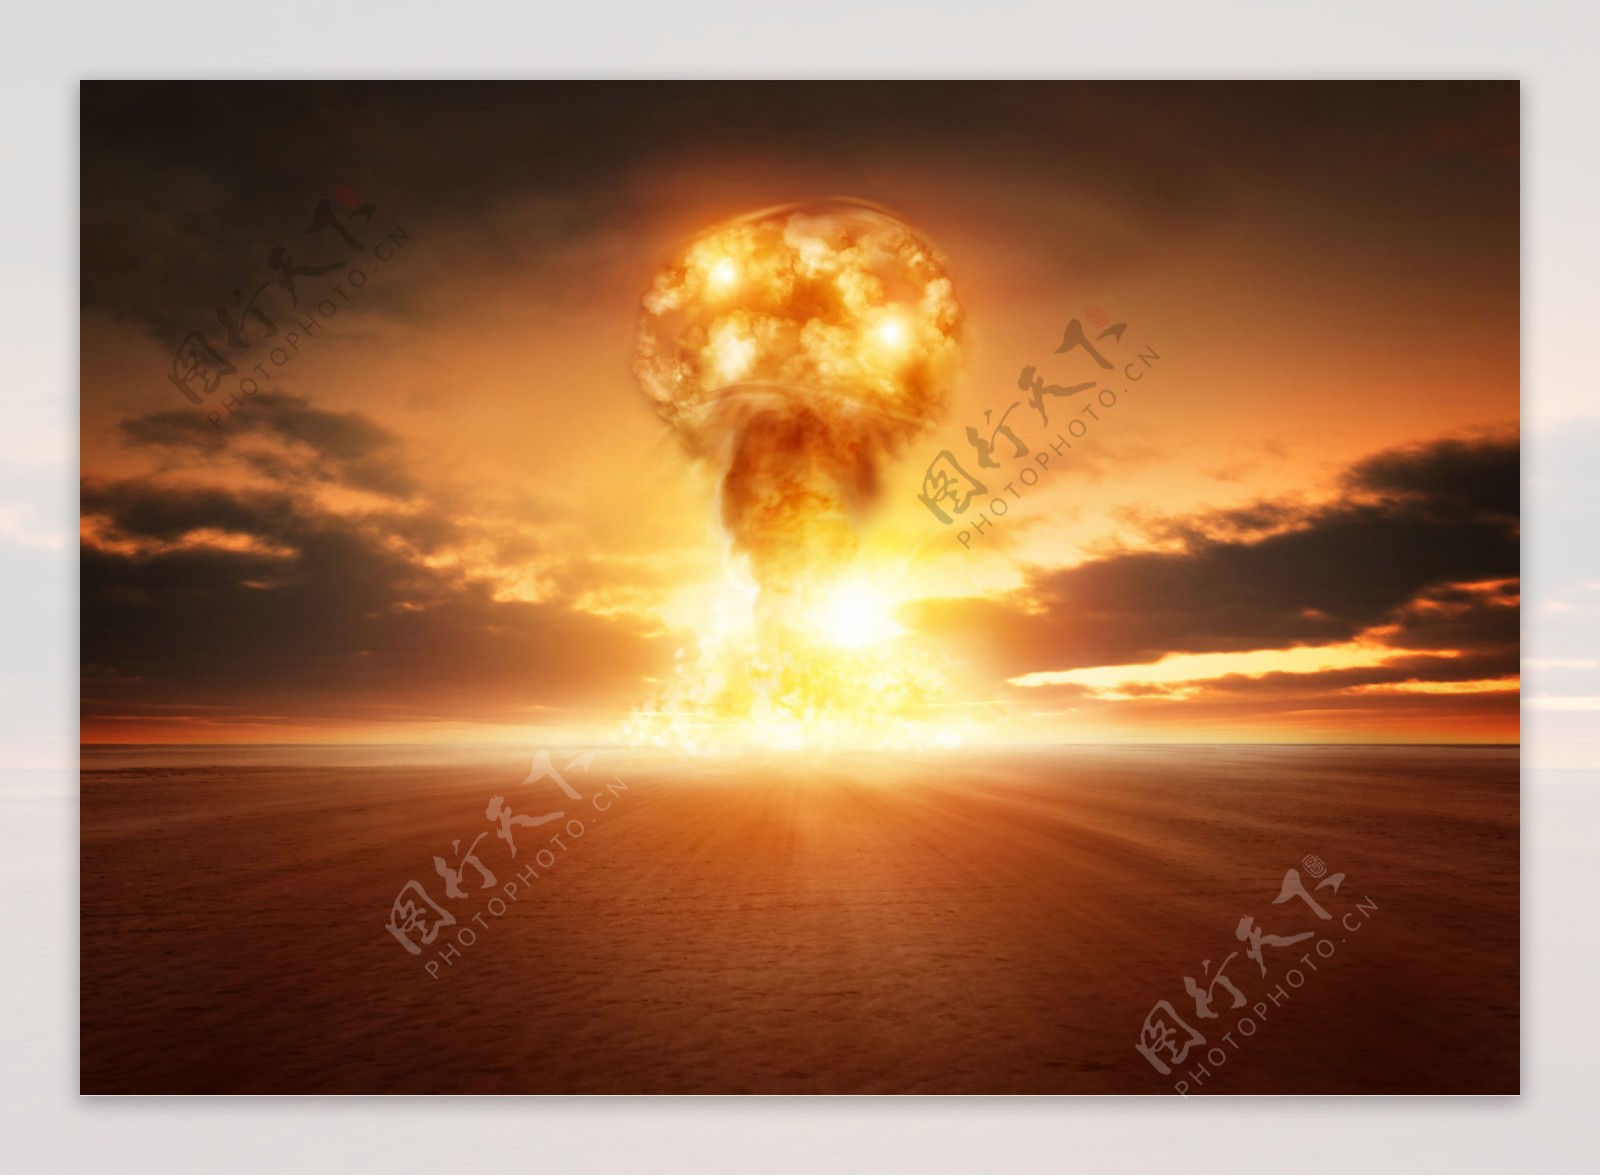 原子弹爆炸蘑菇云图片